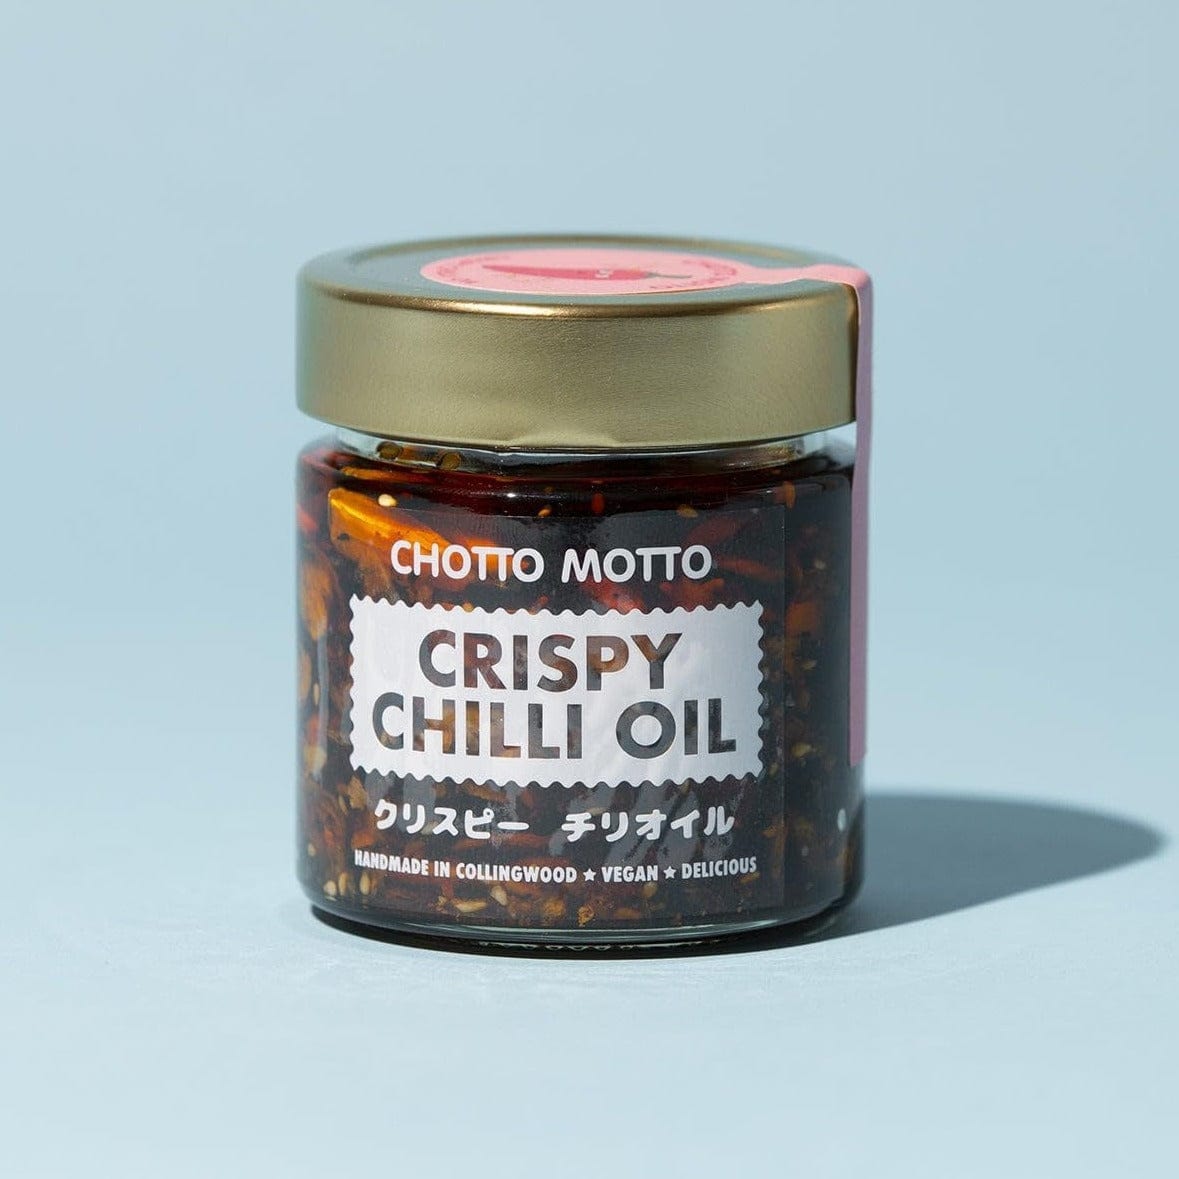 Chotto Motto Crispy Chilli Oil | Chotto Motto